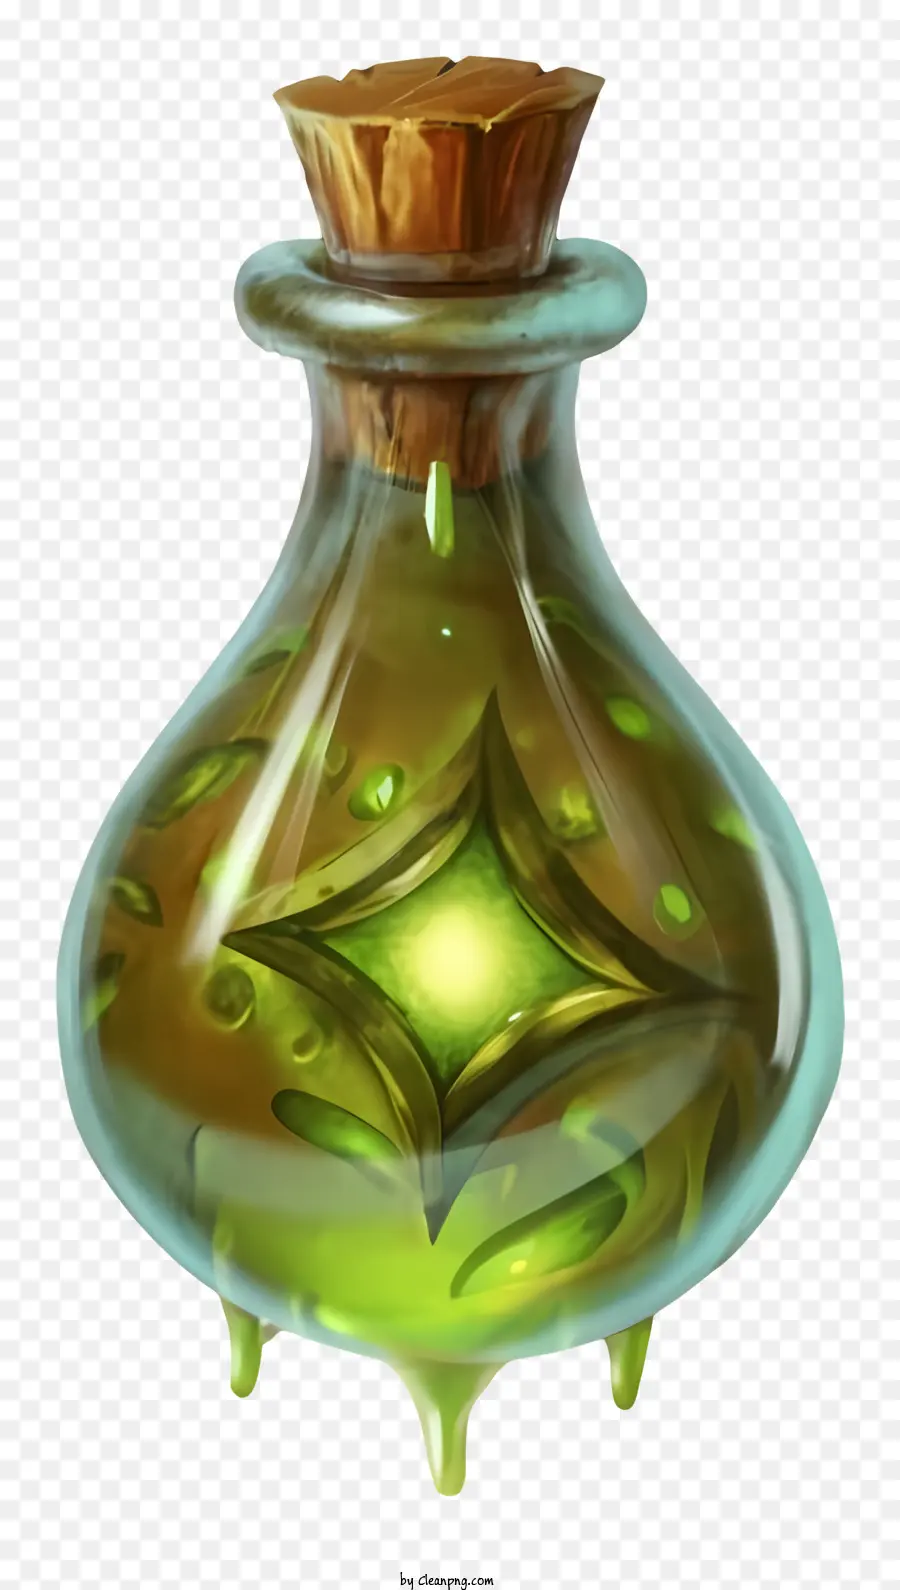 chai thủy tinh chất lỏng màu xanh lá cây kích thước nhỏ trong suốt ánh sáng chiếu sáng - Chai thủy tinh nhỏ chứa đầy chất lỏng màu xanh lá cây